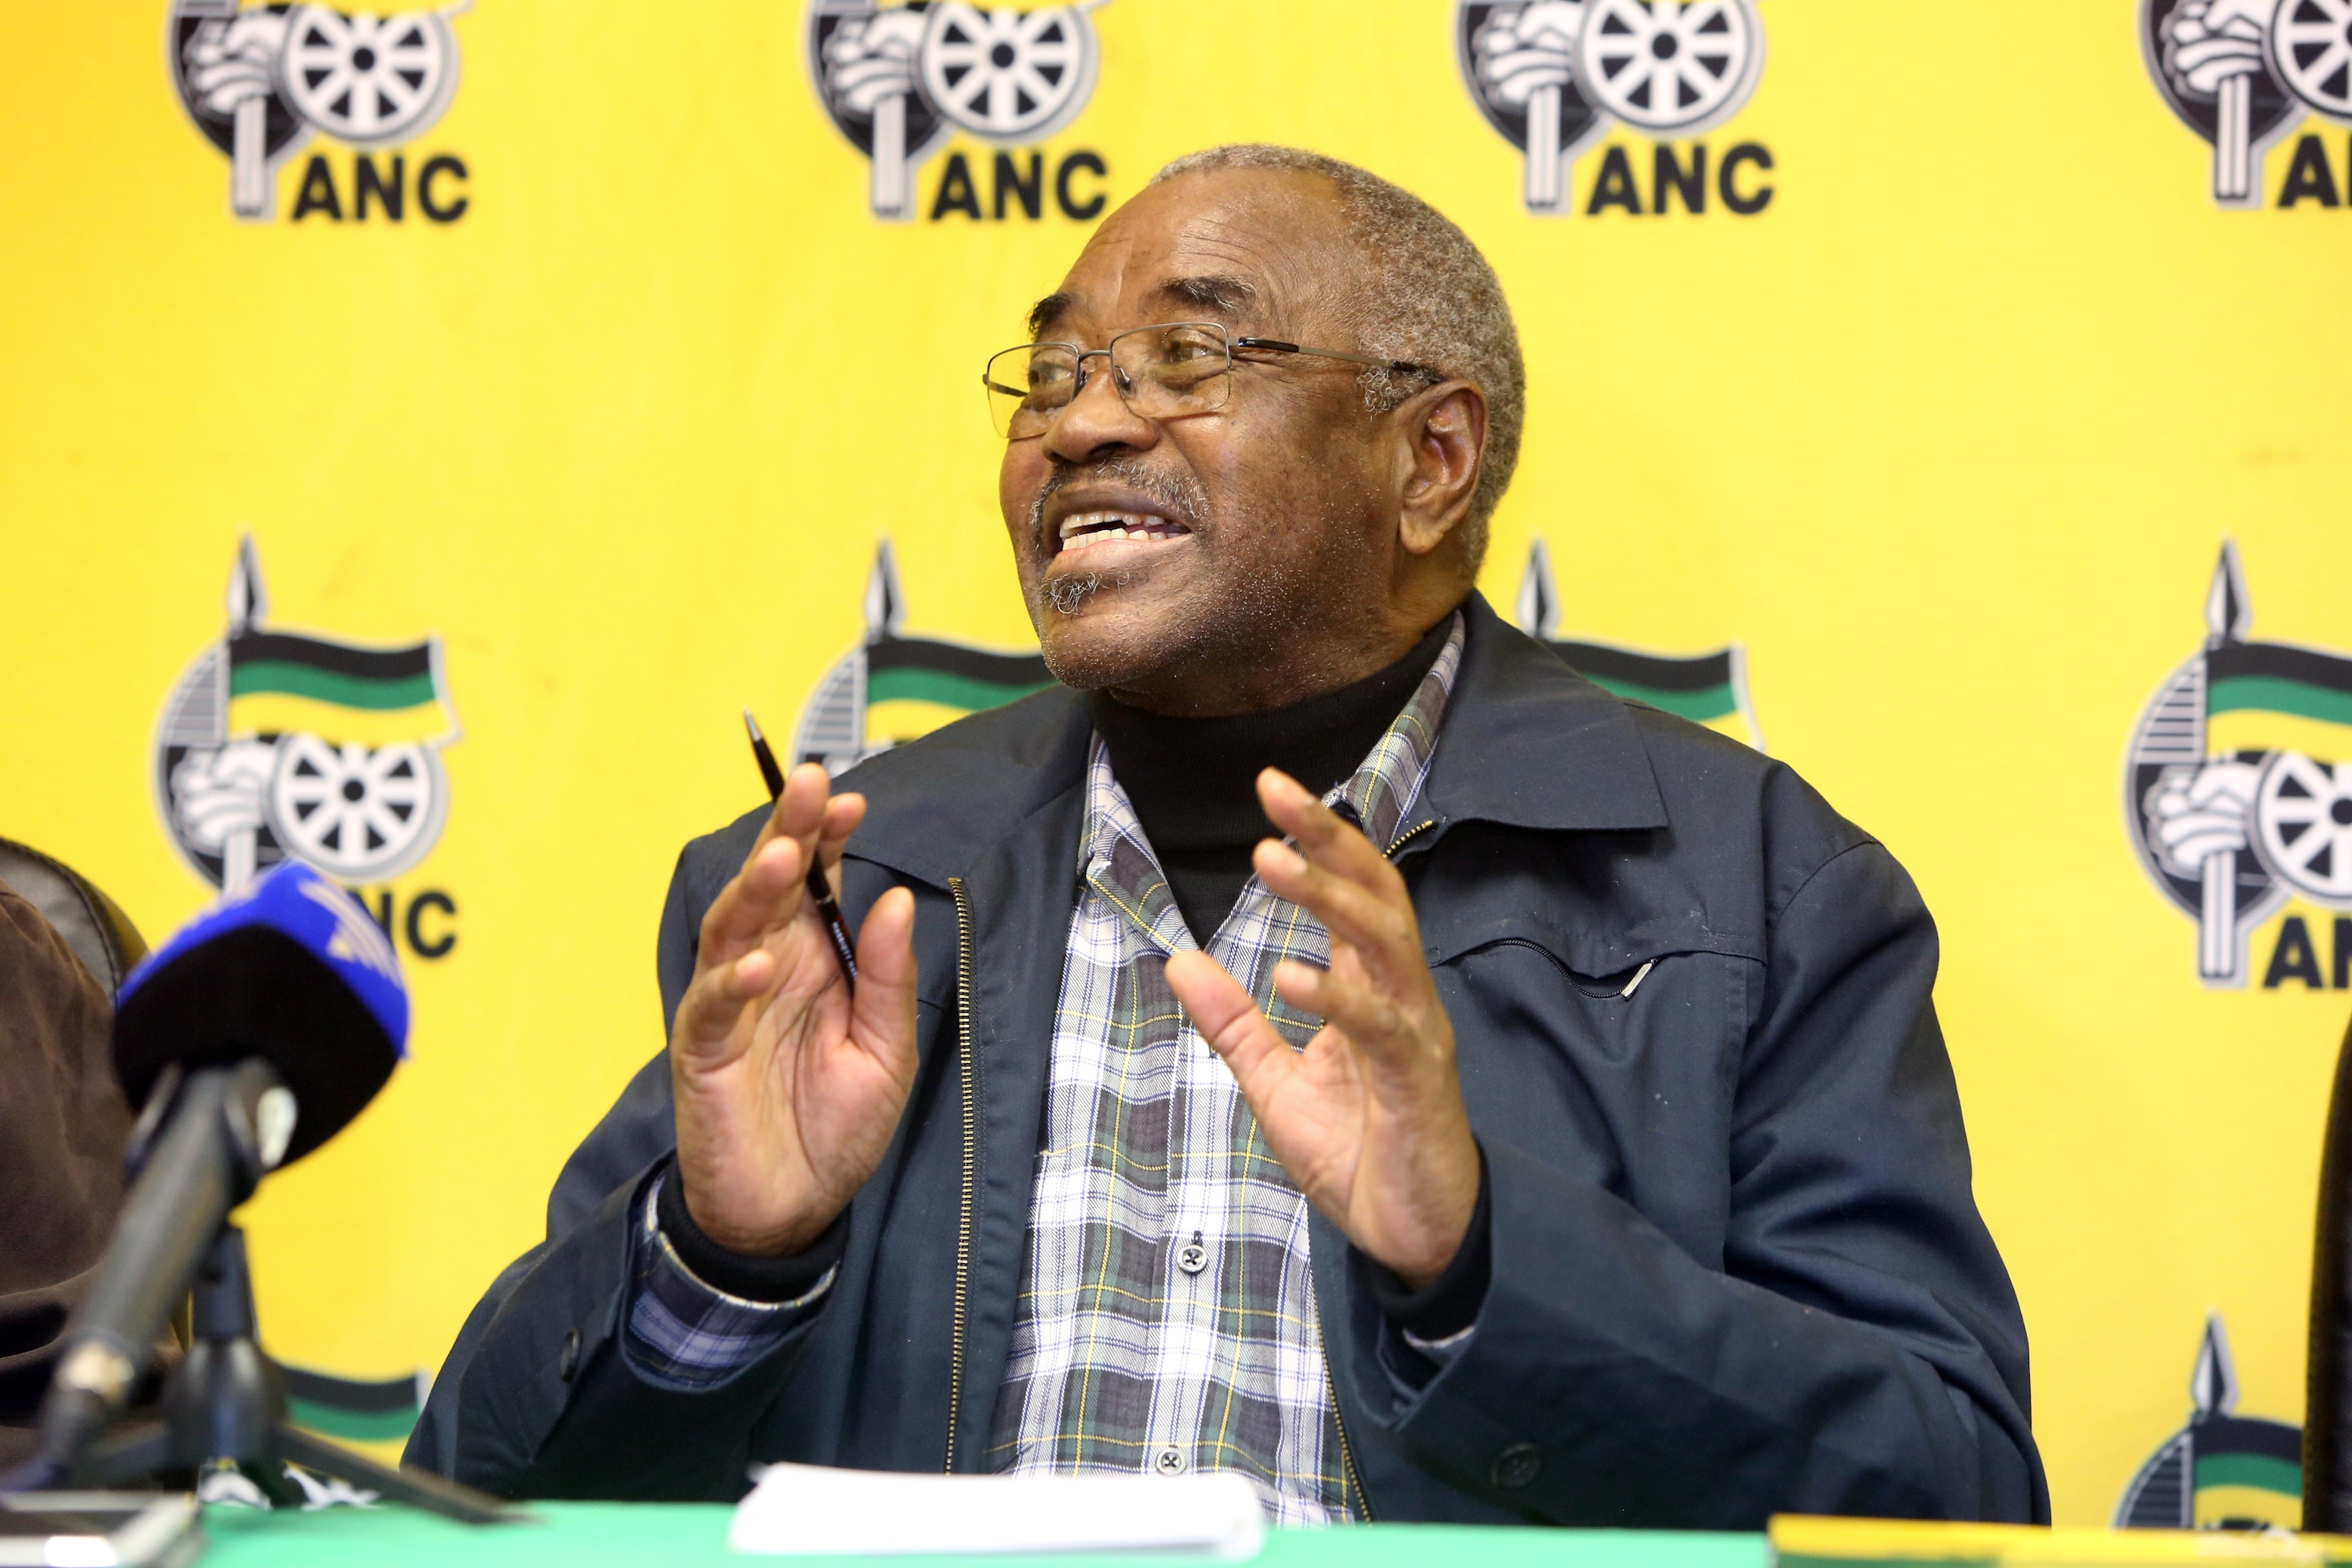 Queenin-JZ-ANC-6 O ANC espera capitalizar a popularidade de Jacob Zuma na KZN para reverter a maré política e conquistar os eleitoresO ANC em KwaZulu-Natal (KZN)